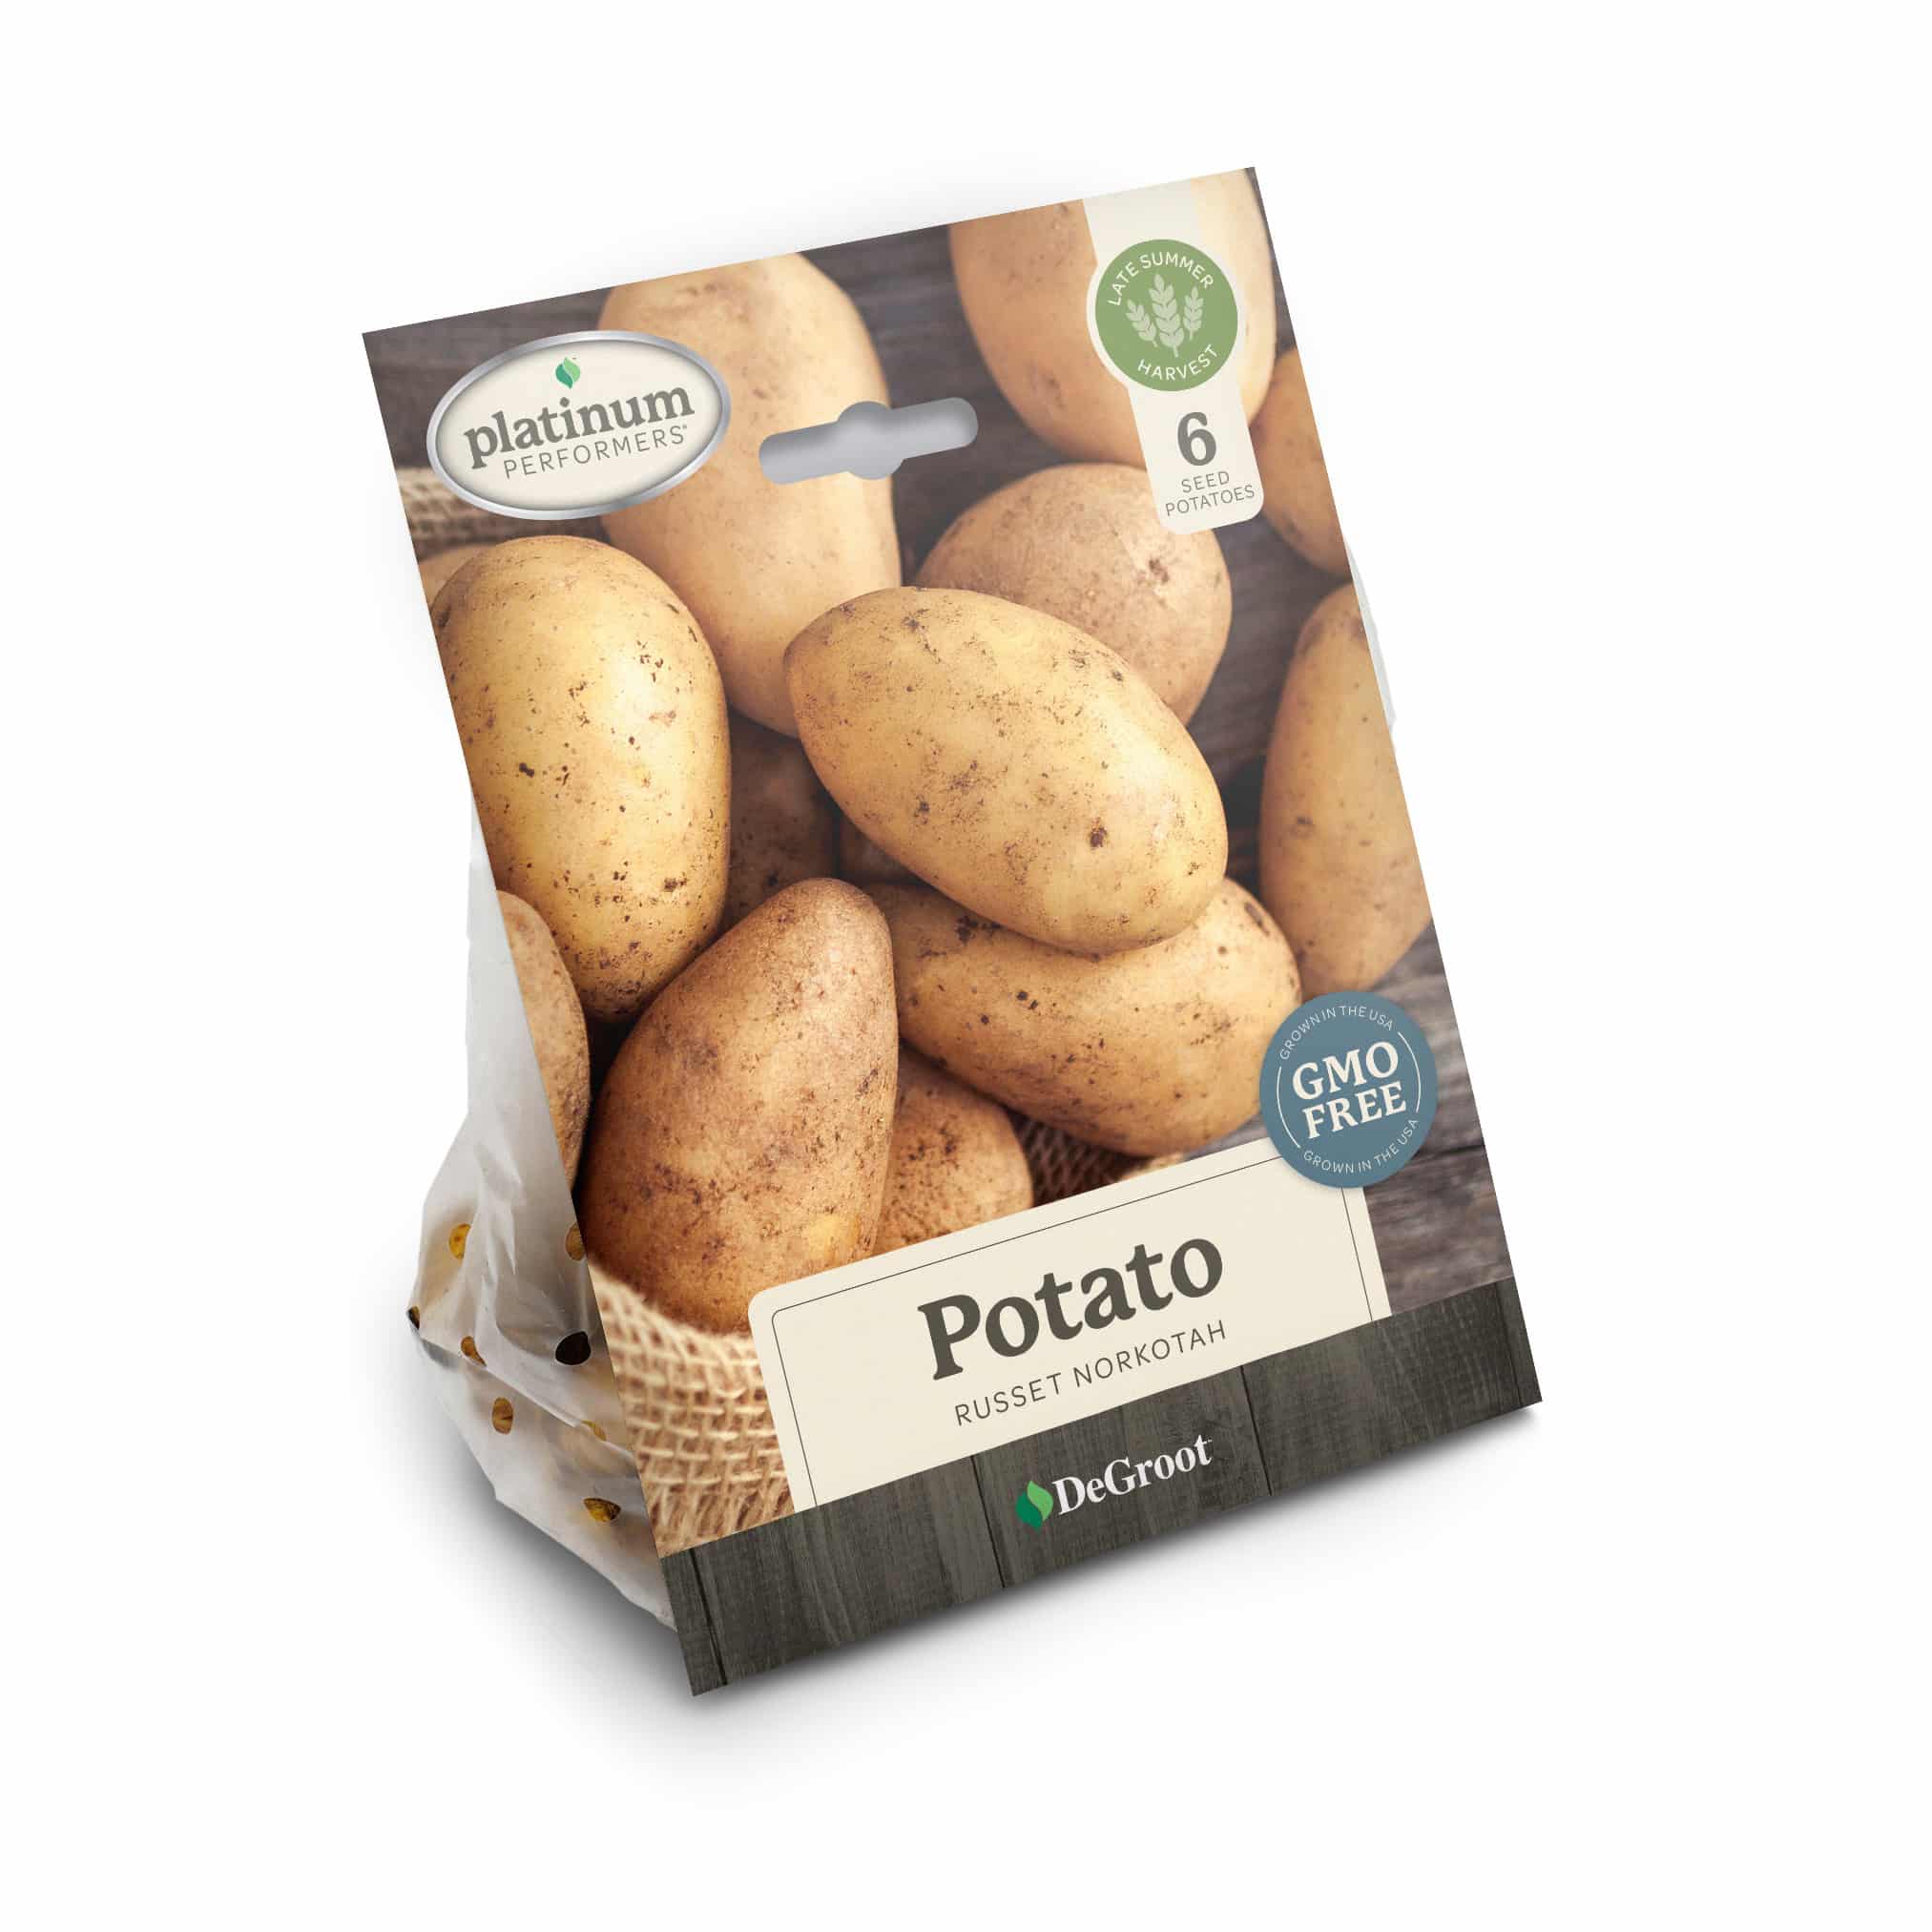 Russet Potato "Norkotah"